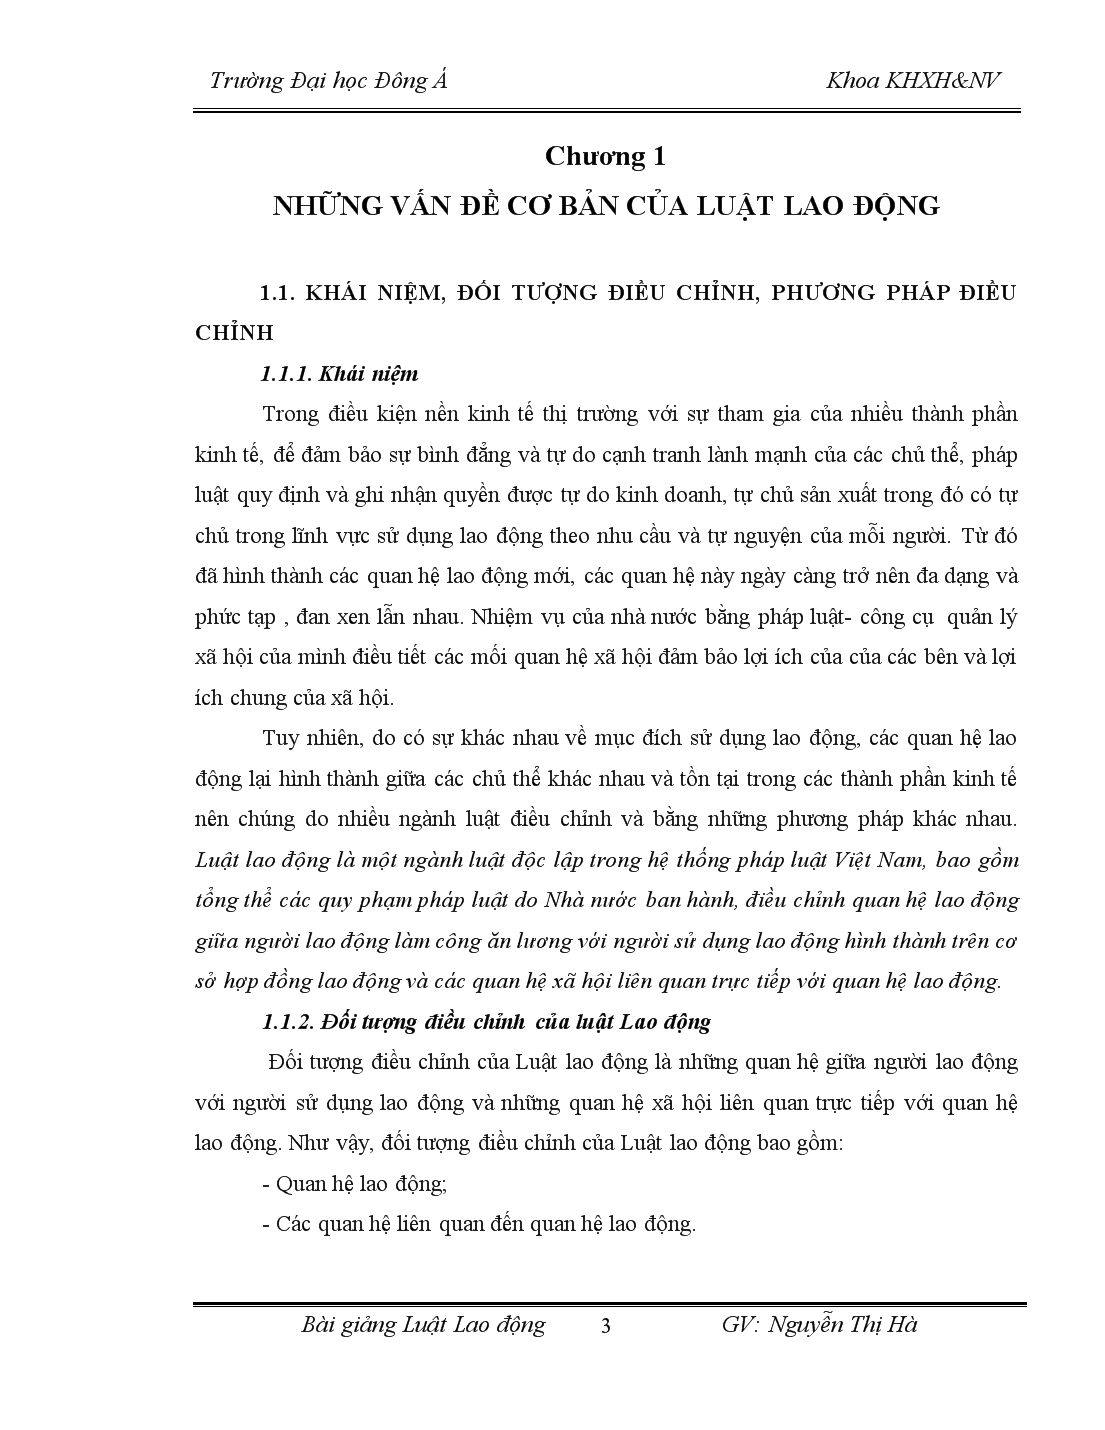 Bài giảng luật lao động Việt Nam trang 3